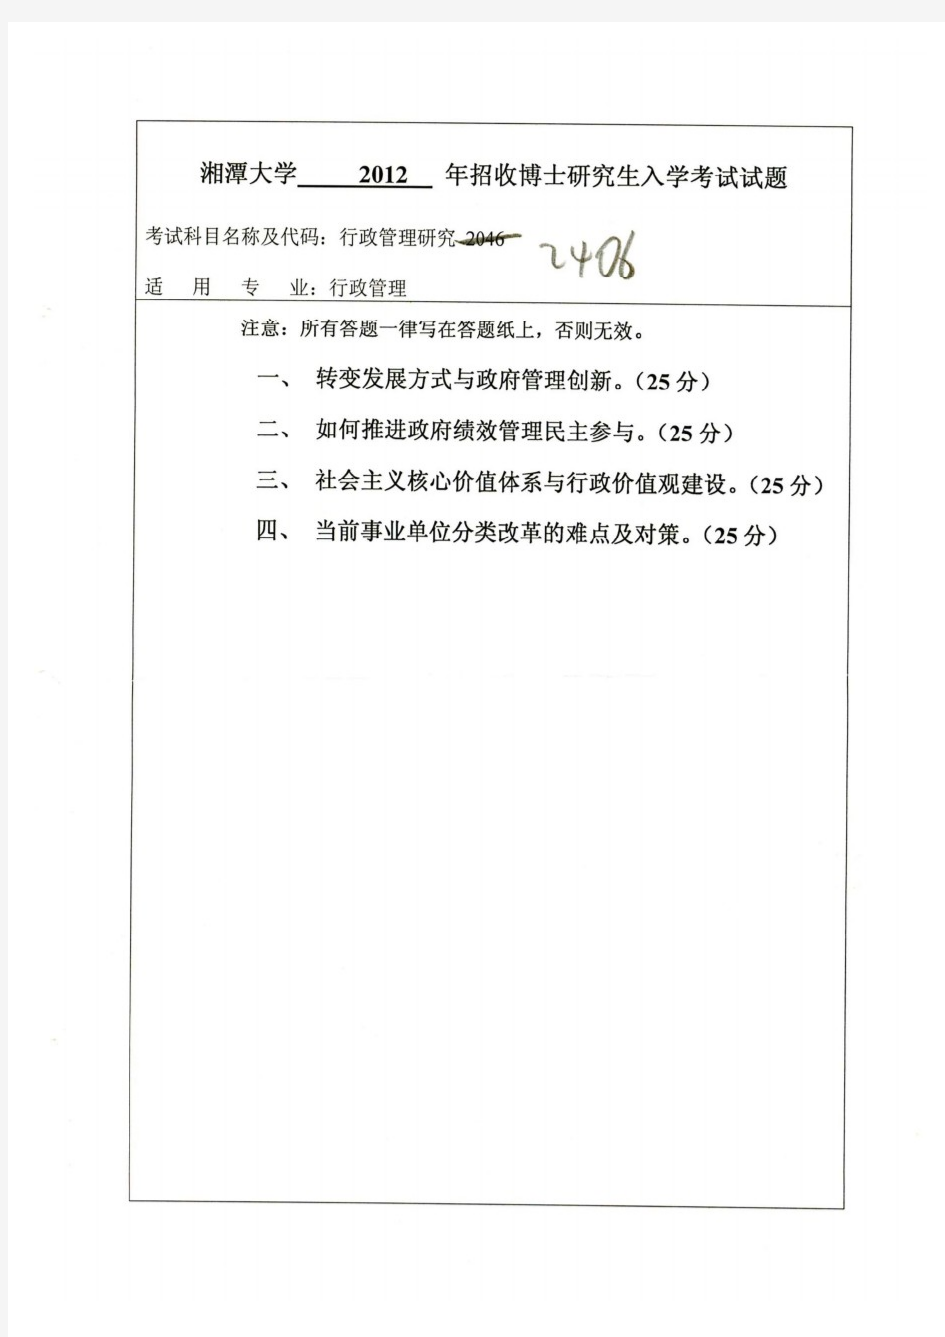 湘潭大学2012年《2406行政管理研究》博士研究生入学考试试题